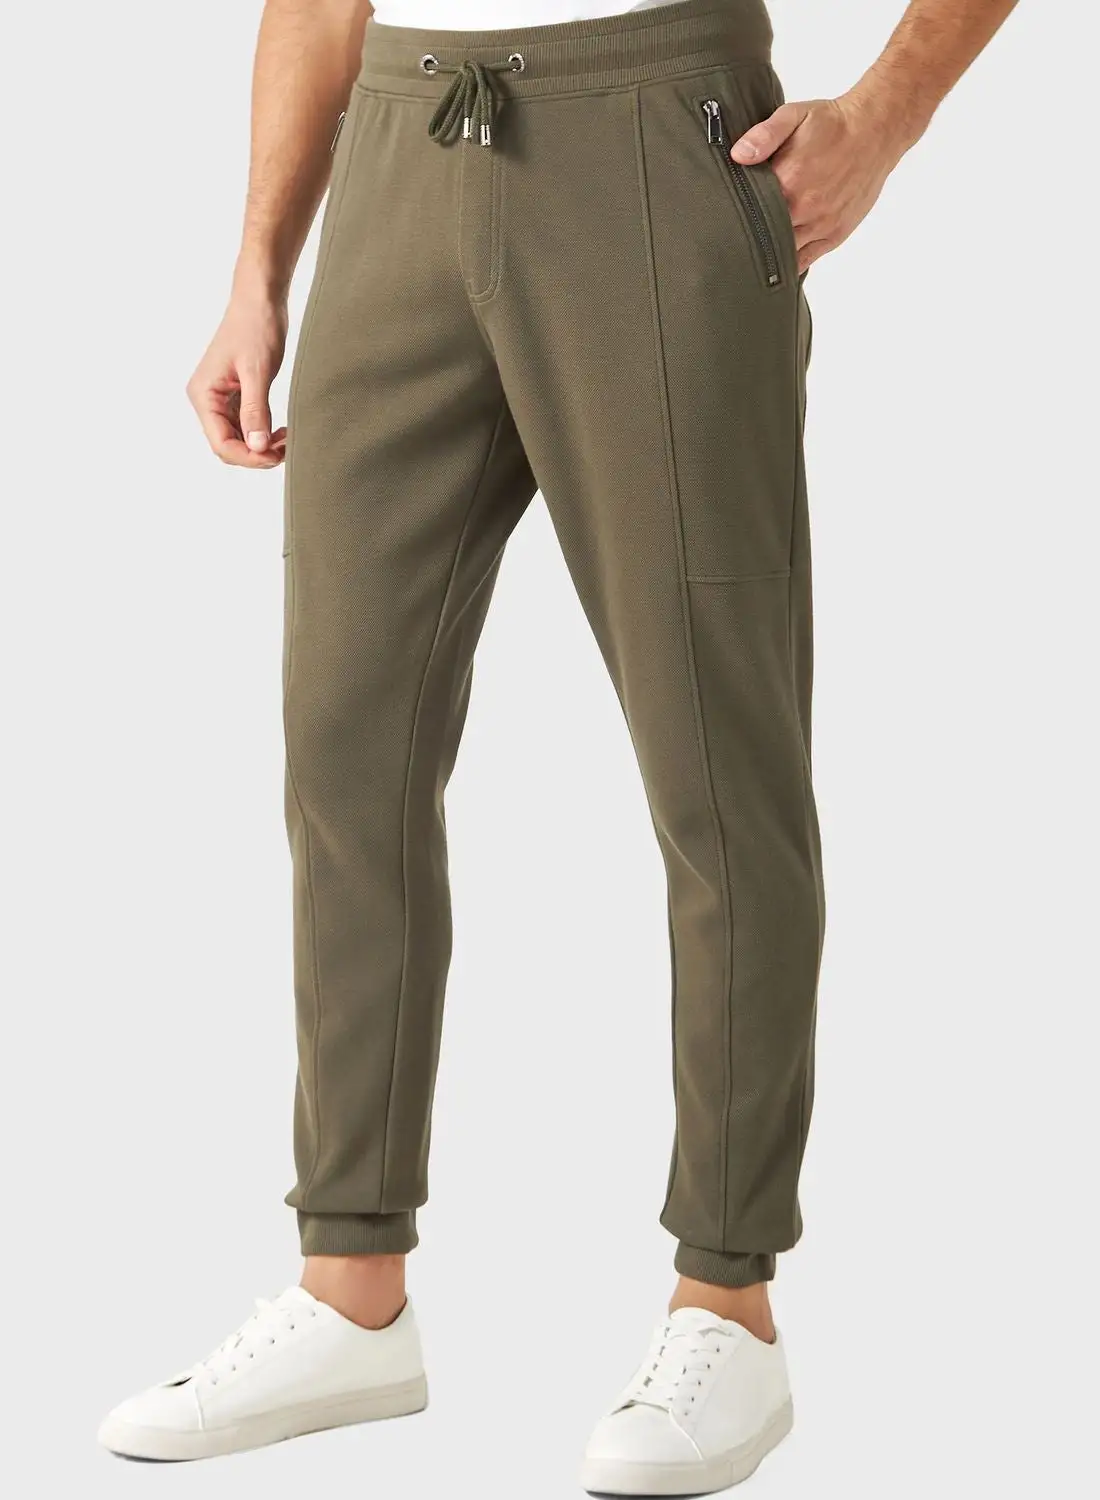 Iconic Pocket Detail Drawstring Sweatpants